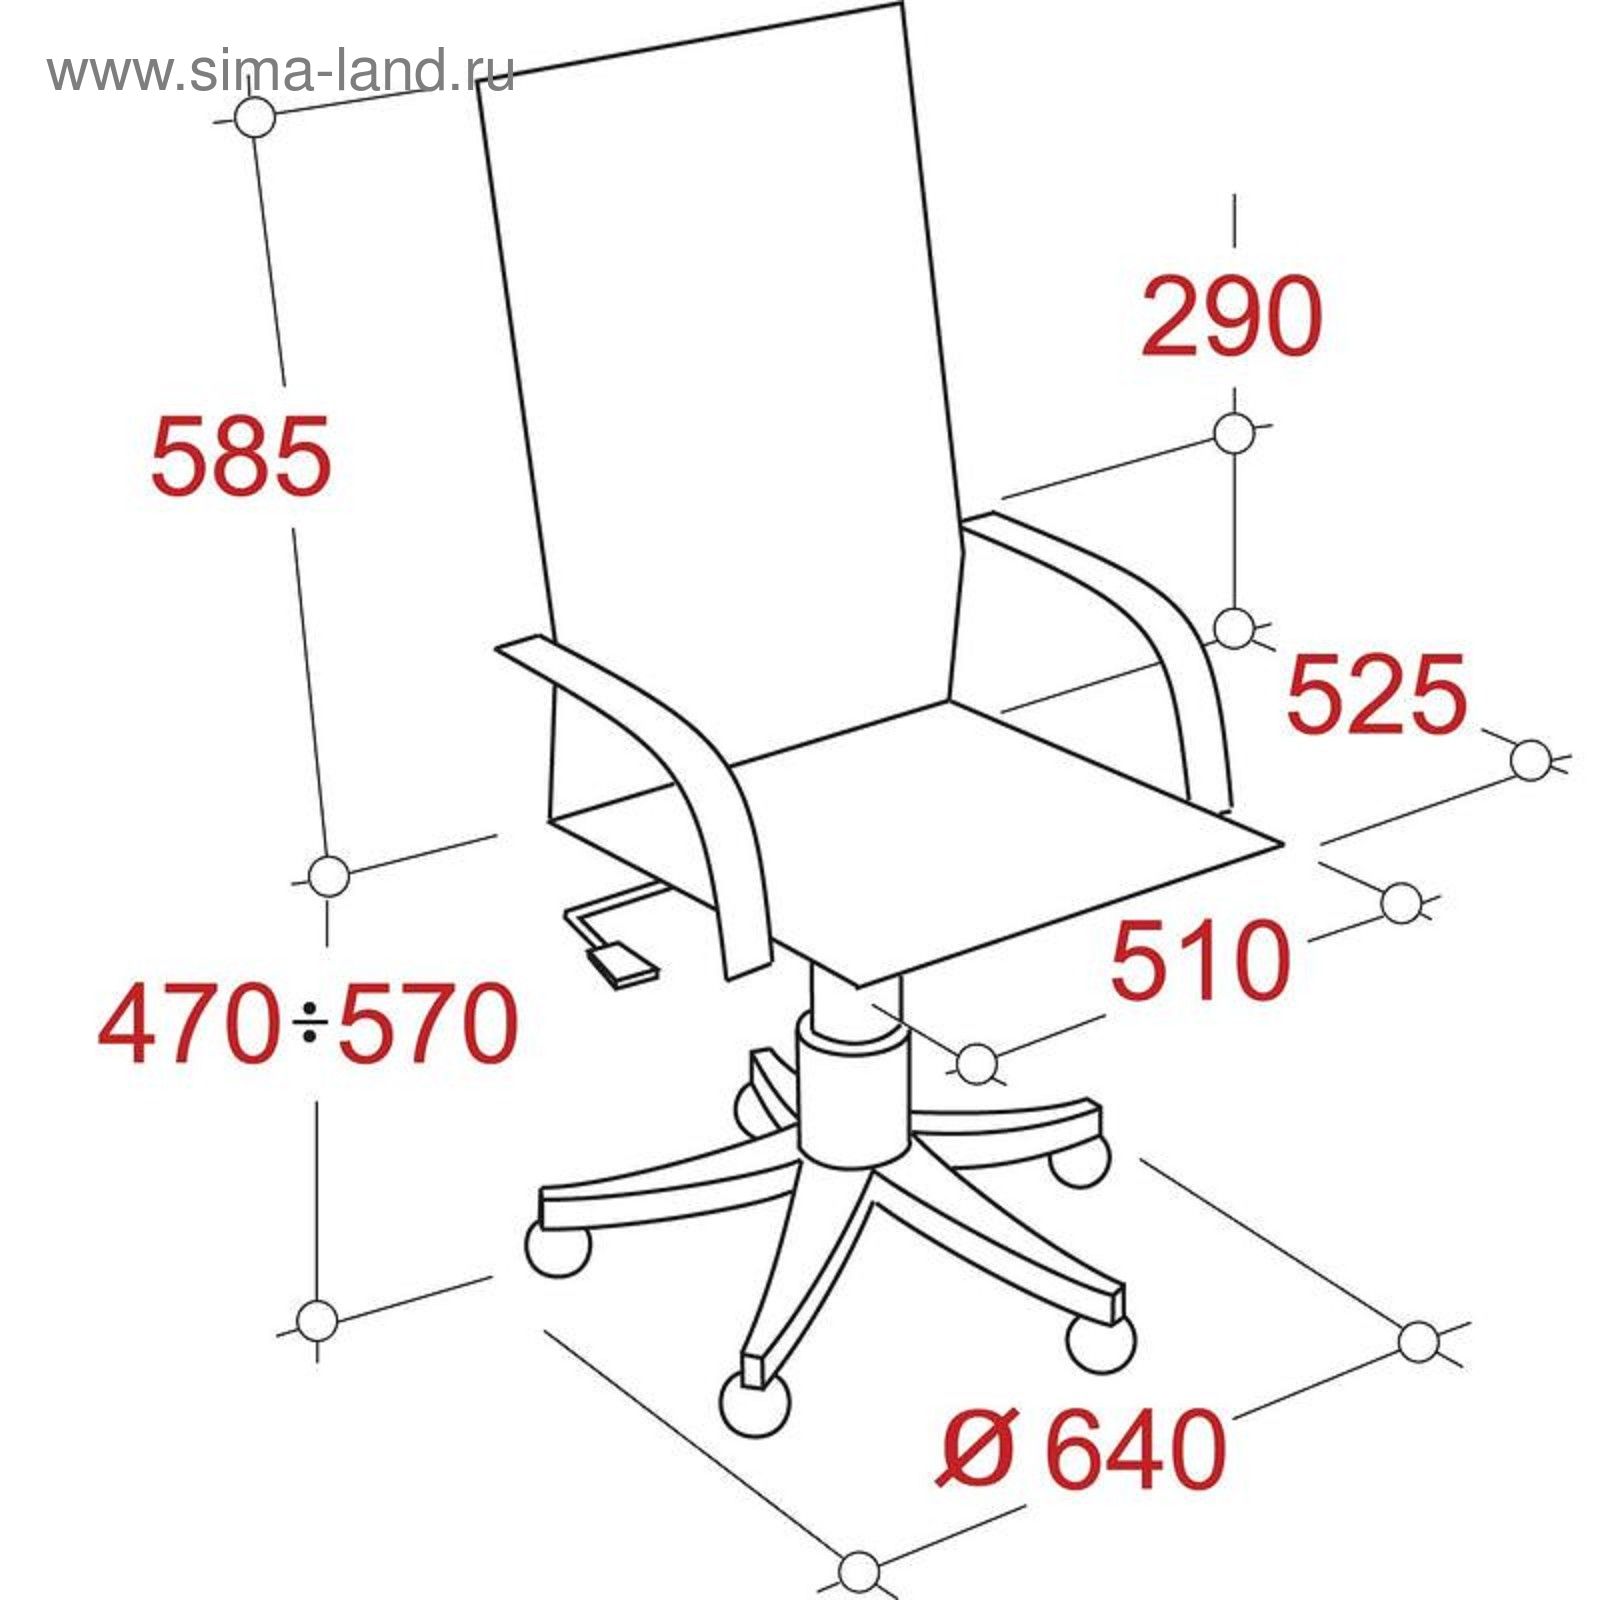 габаритные размеры офисного кресла